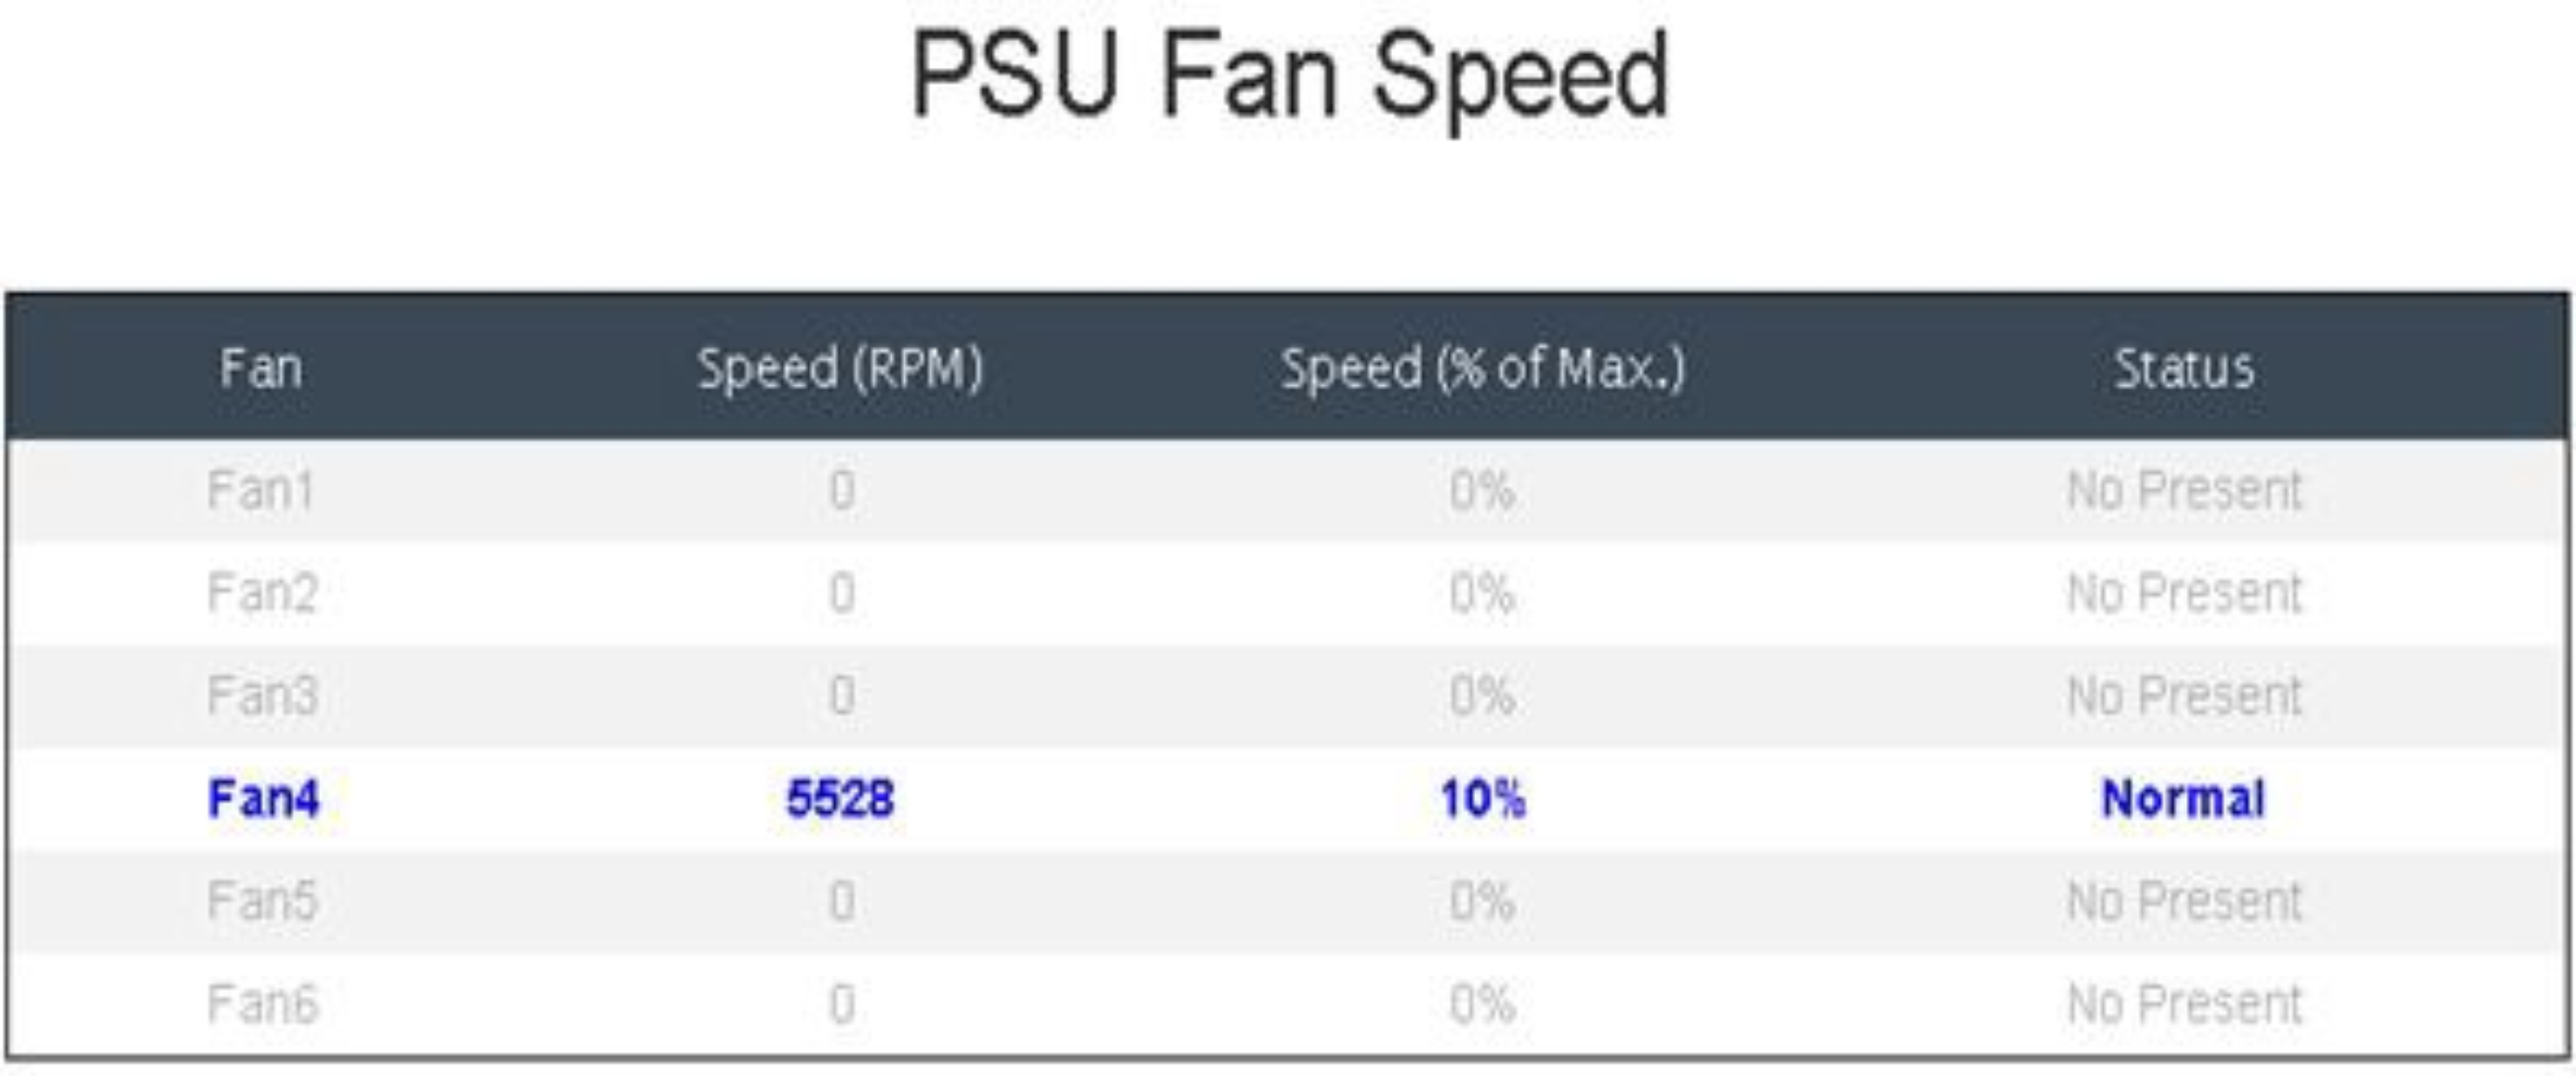 PSU Fan Speed